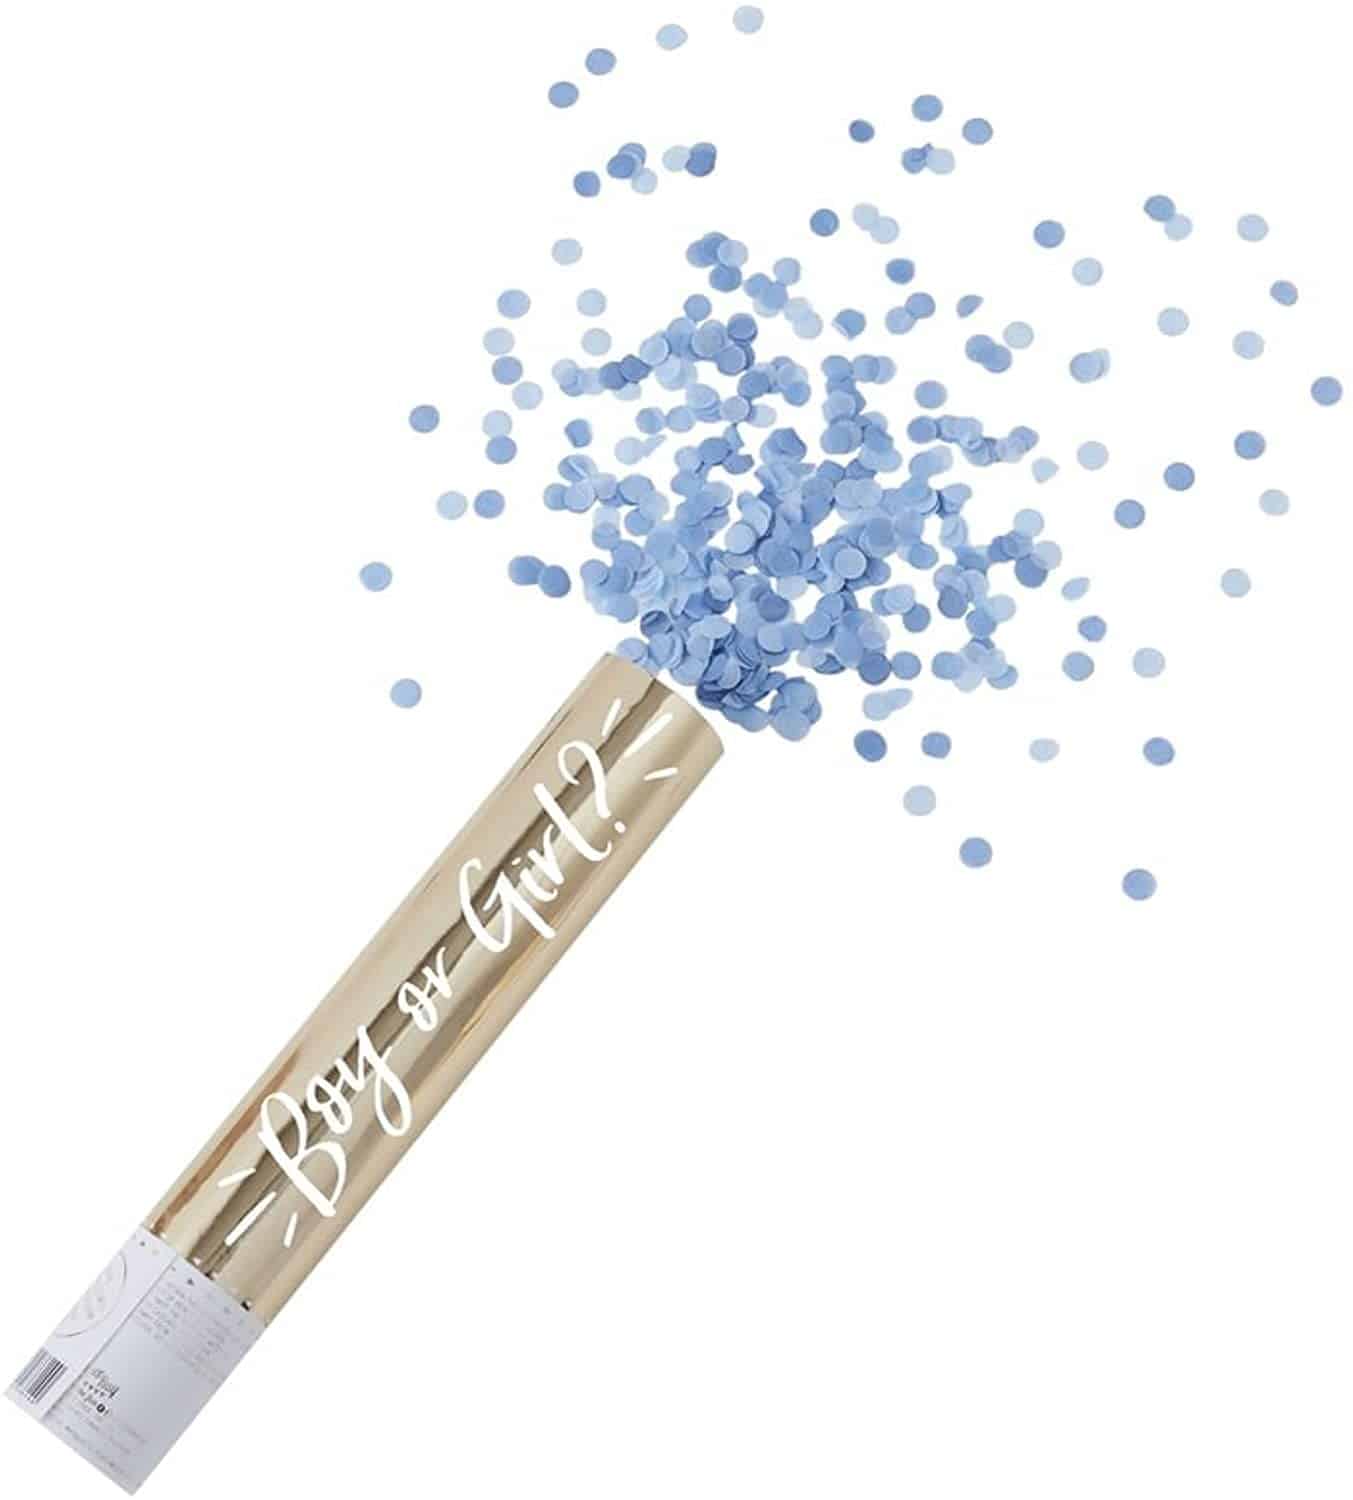 Blue gender reveal confetti cannon